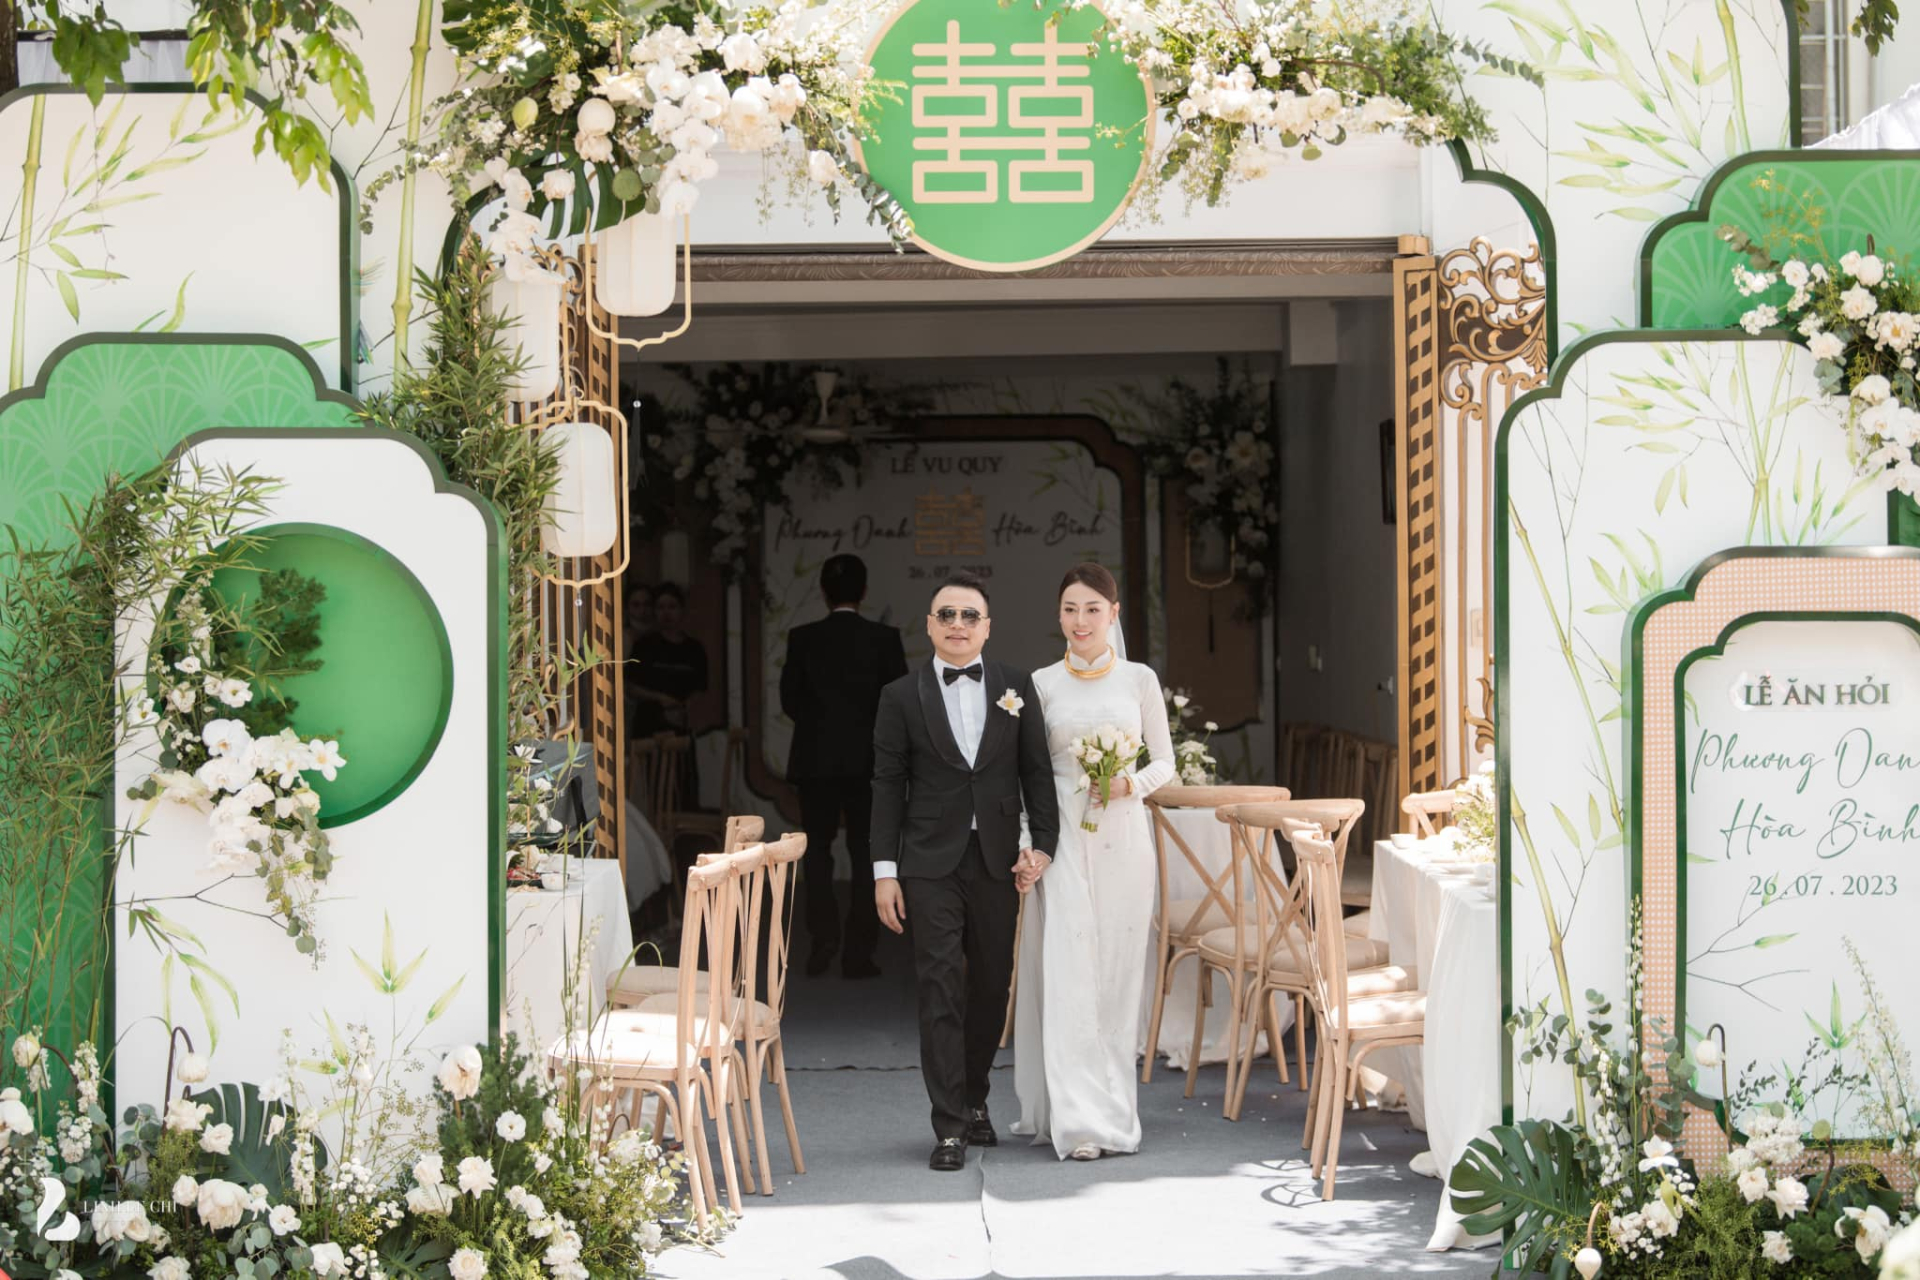 Diễn viên Phương Oanh đi thử váy cưới, ấn định tổ chức hôn lễ cổ tích với Shark Bình sau 2 tháng ăn hỏi - ảnh 4